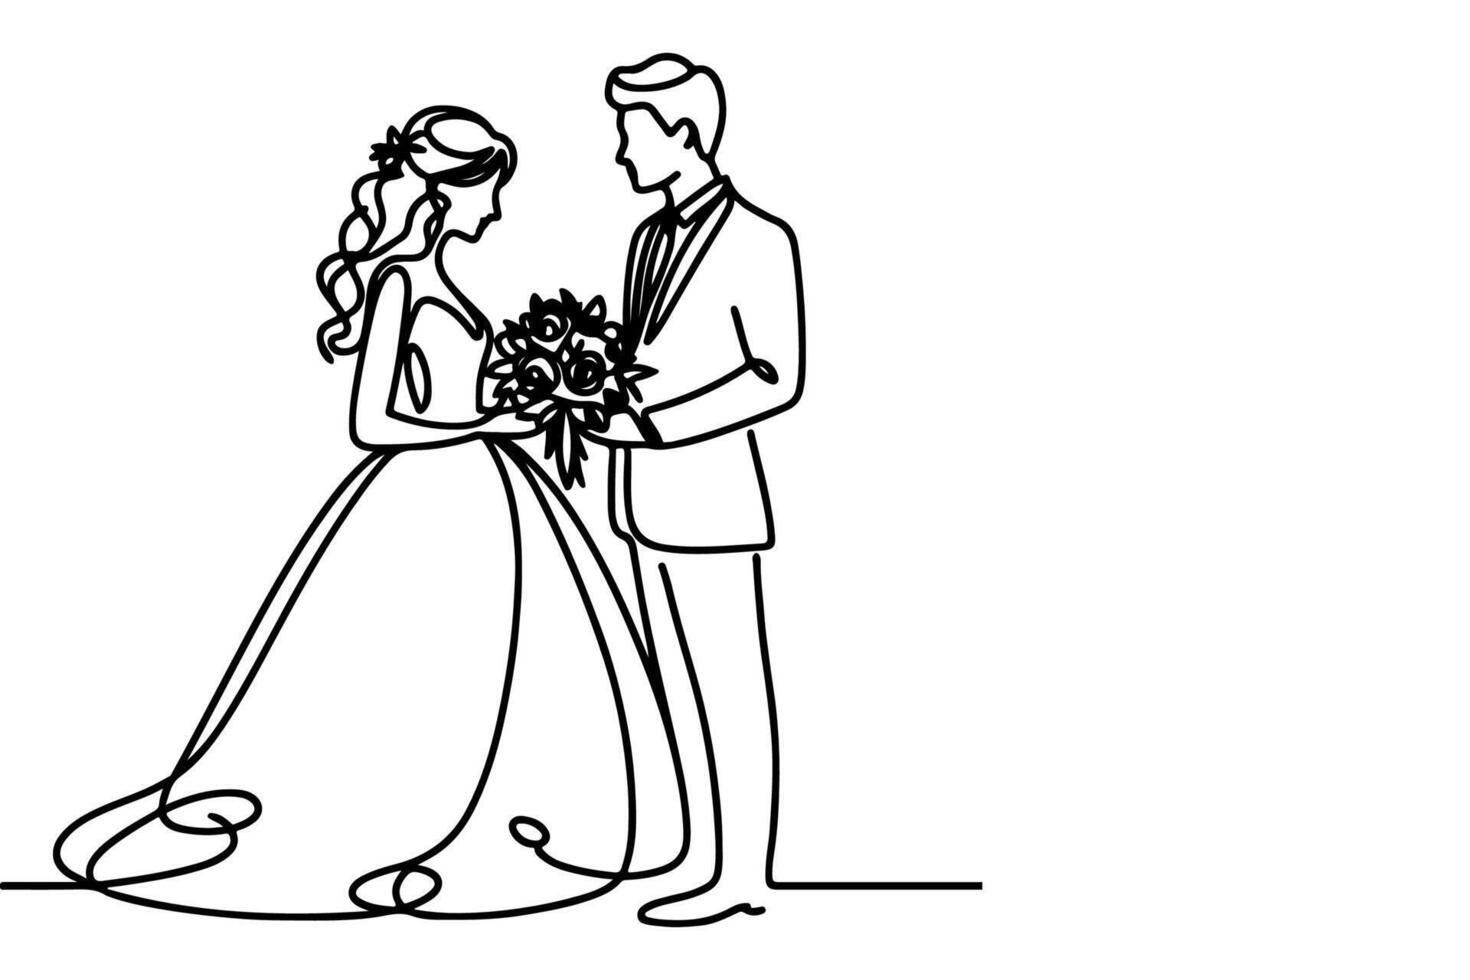 ai generiert einer kontinuierlich Single Zeichnung schwarz Linie Kunst Gekritzel Hochzeit Paar Braut und Bräutigam outne Vektor Illustration auf Weiß Hintergrund